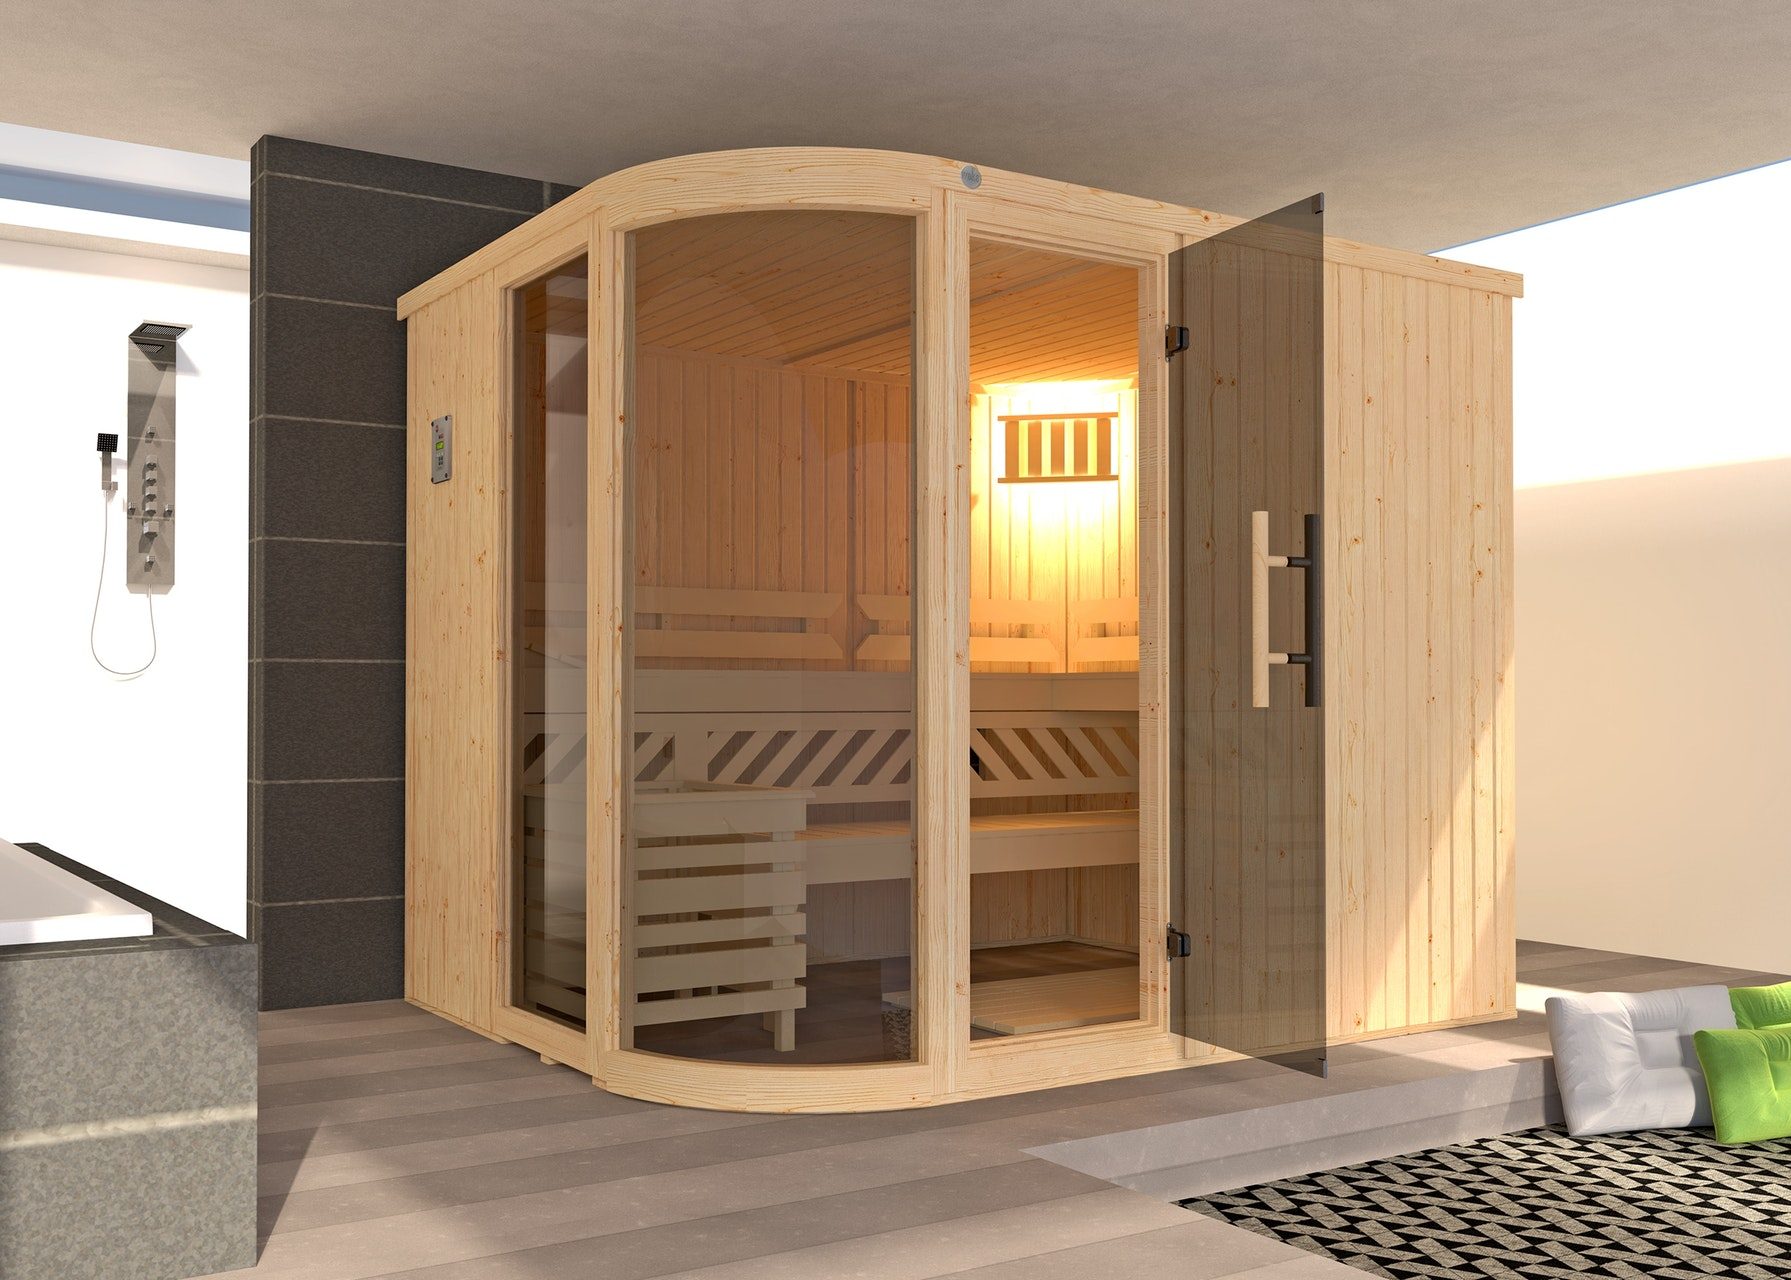 Weka Design Sauna Sara Saving Set Includes Heater 68 Mm